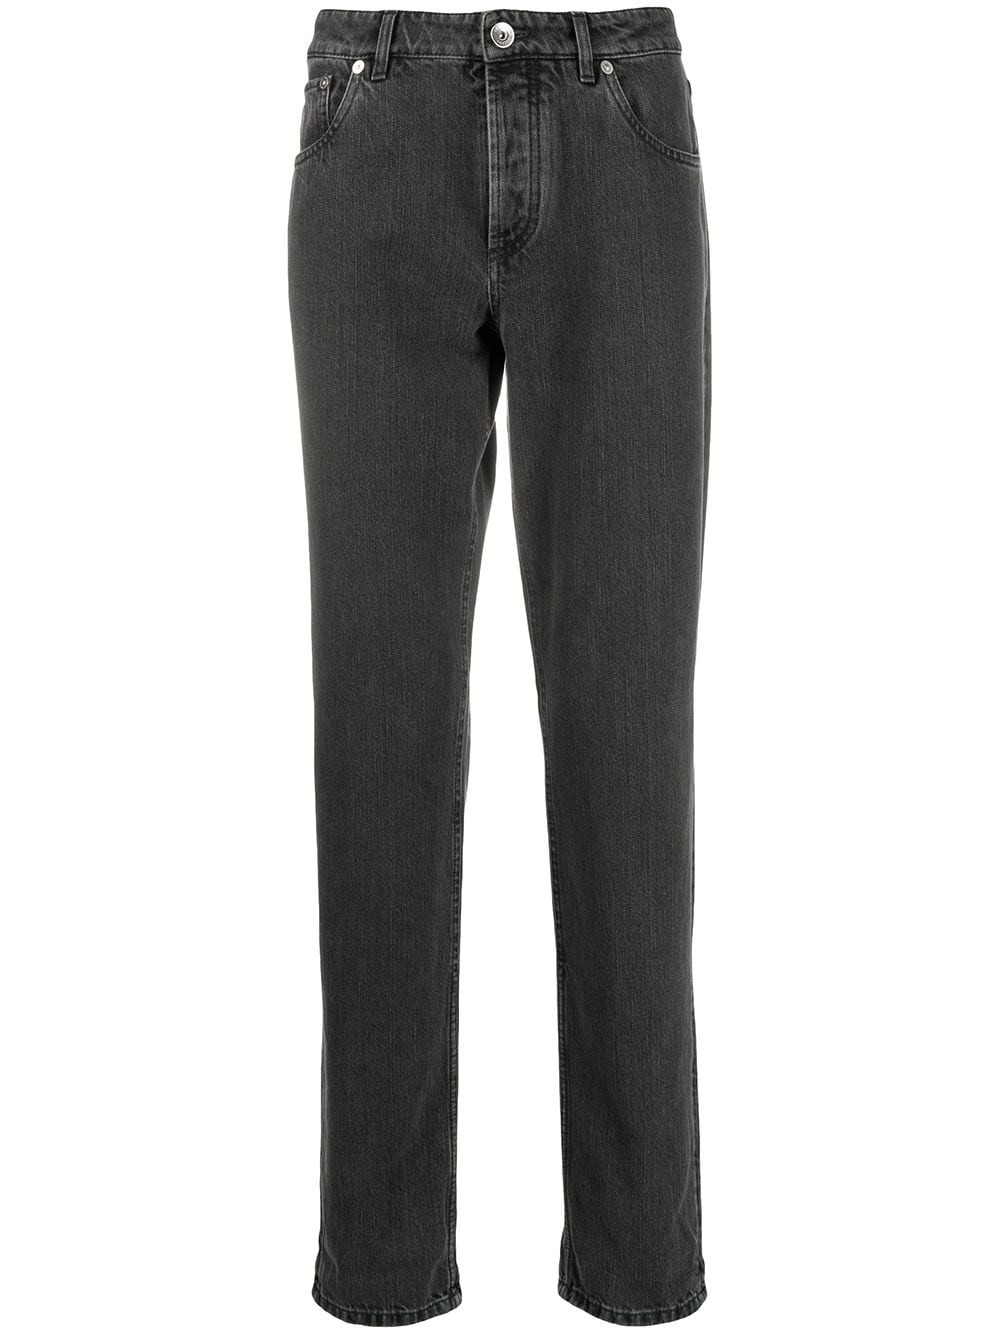 Pantalone cinque tasche traditional fit – Grigio medium